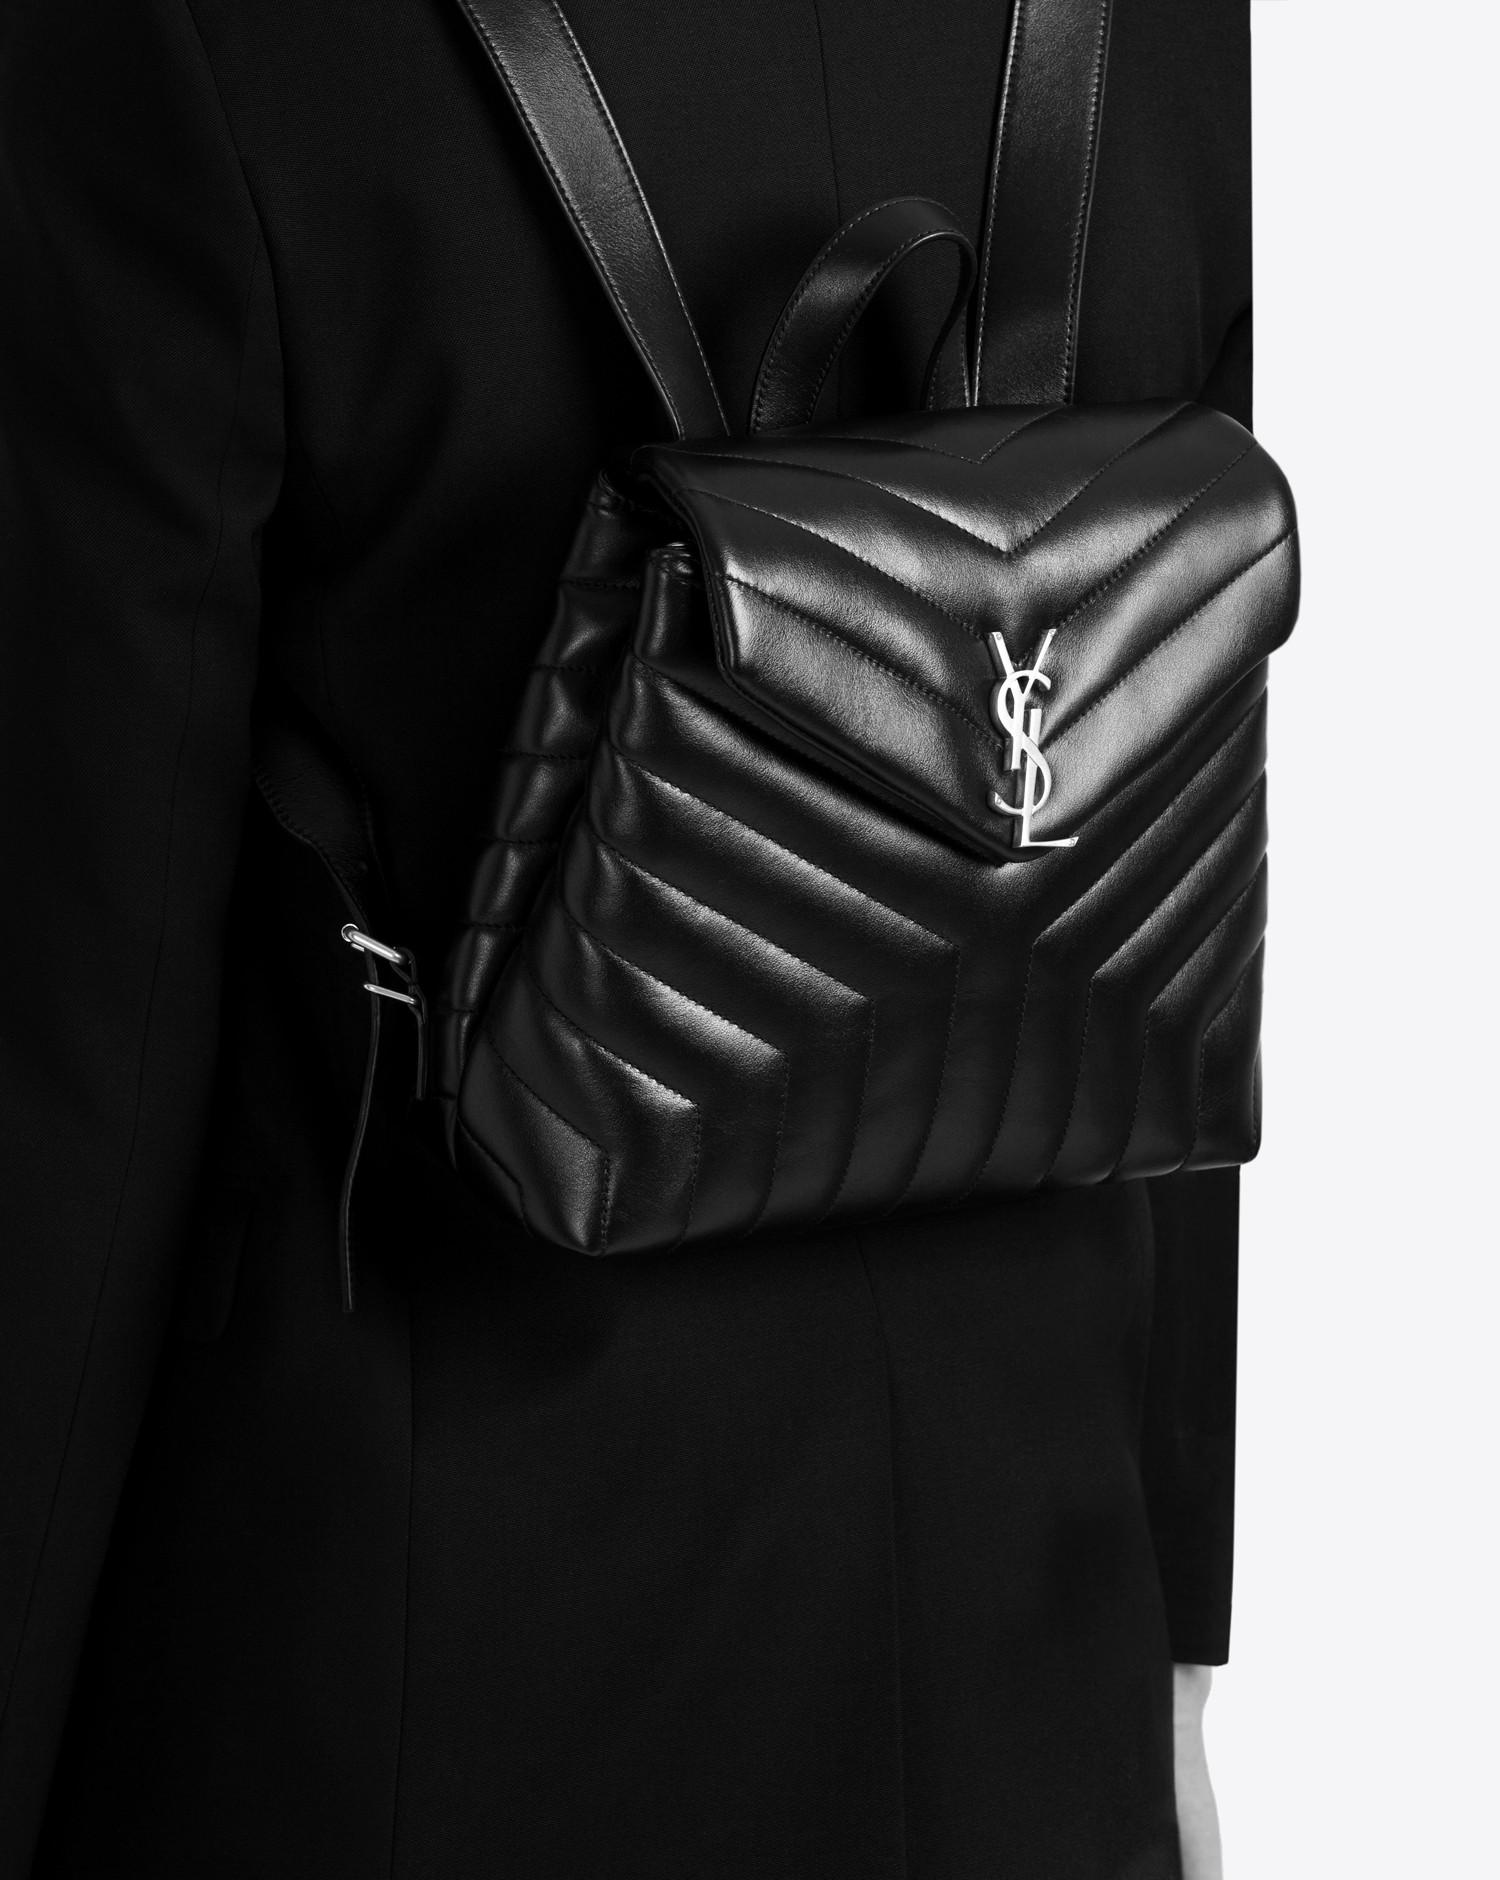 Yves Saint Laurent Small Loulou Matelassé Leather Bag